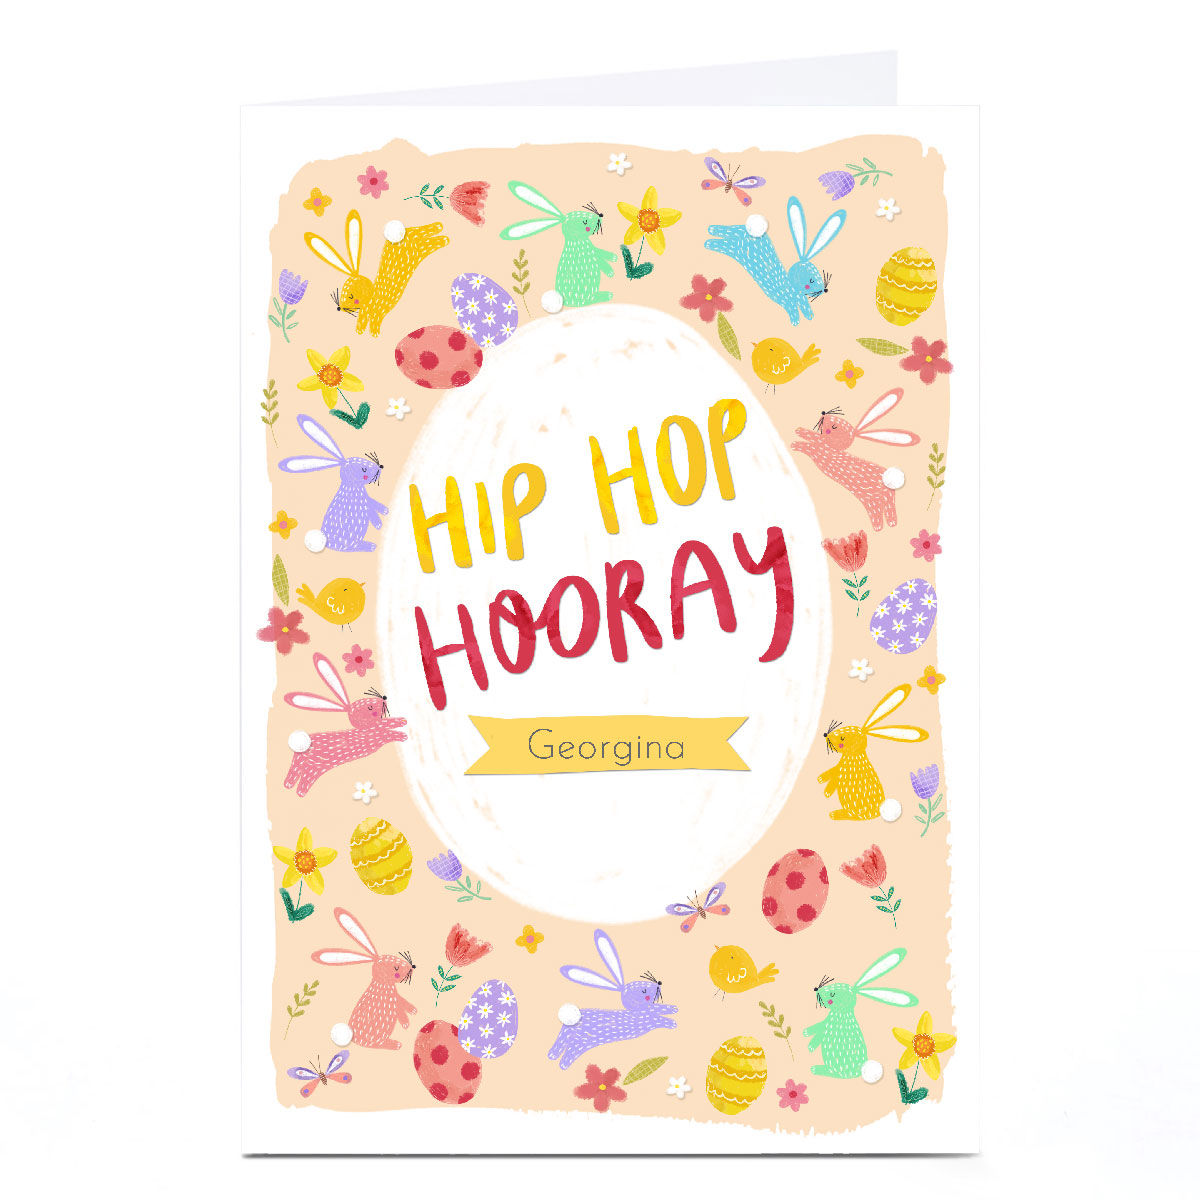 Personalised Kerry Spurling Easter Card - Hip Hip Hooray